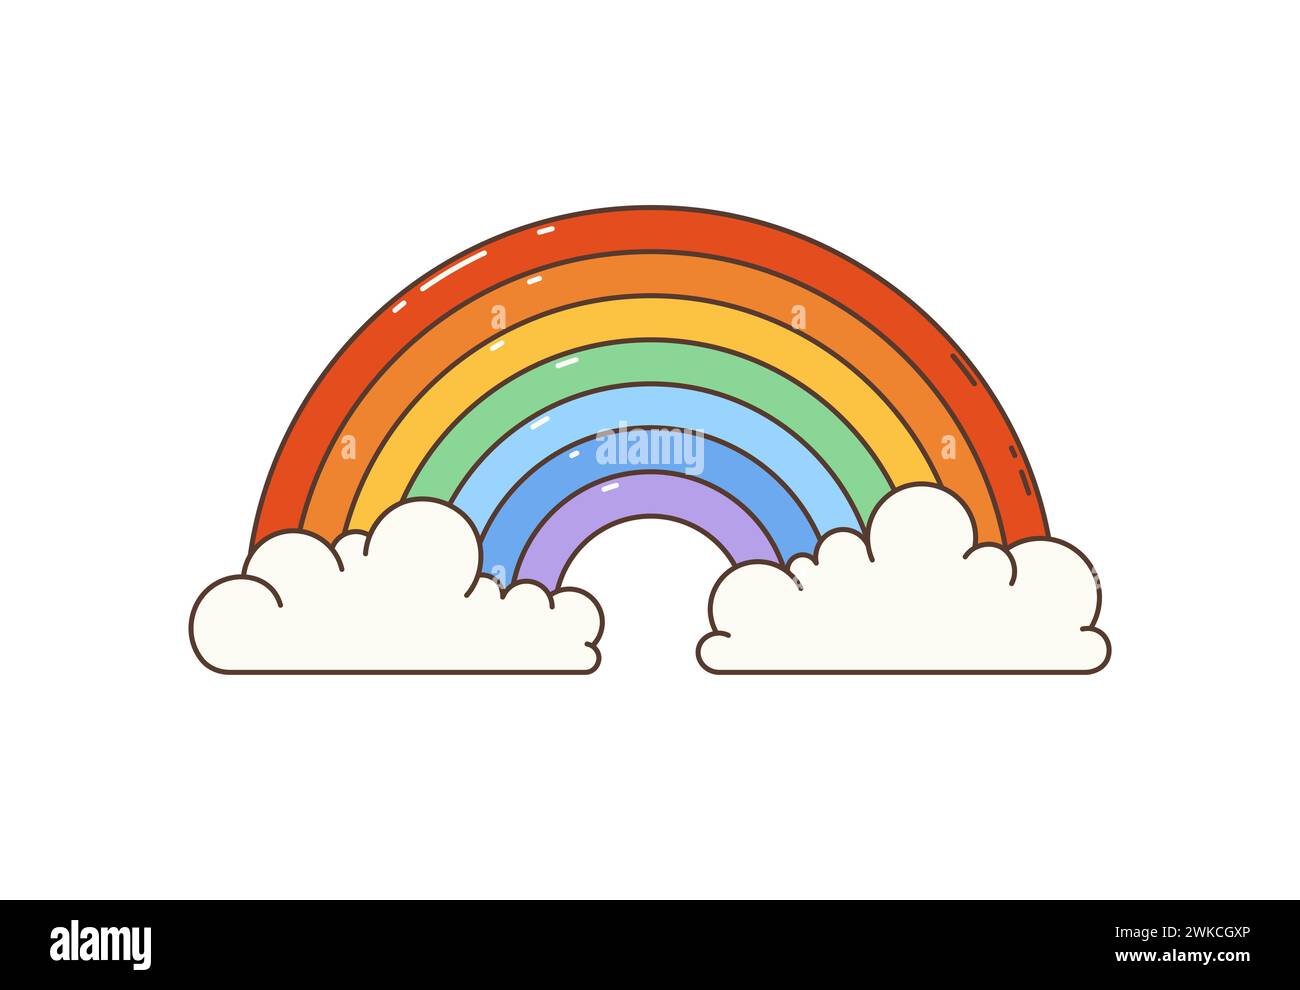 Grooviger Hippie-Regenbogen im Retro-Zeichentrick mit Wolken. Isolierter Vektor funky, lebendiger himmlischer Bogen in hellen psychedelischen Farben, der positive und magische Vibes der 1970er Jahre hervorruft Symbol der Freude und des Staunens Stock Vektor